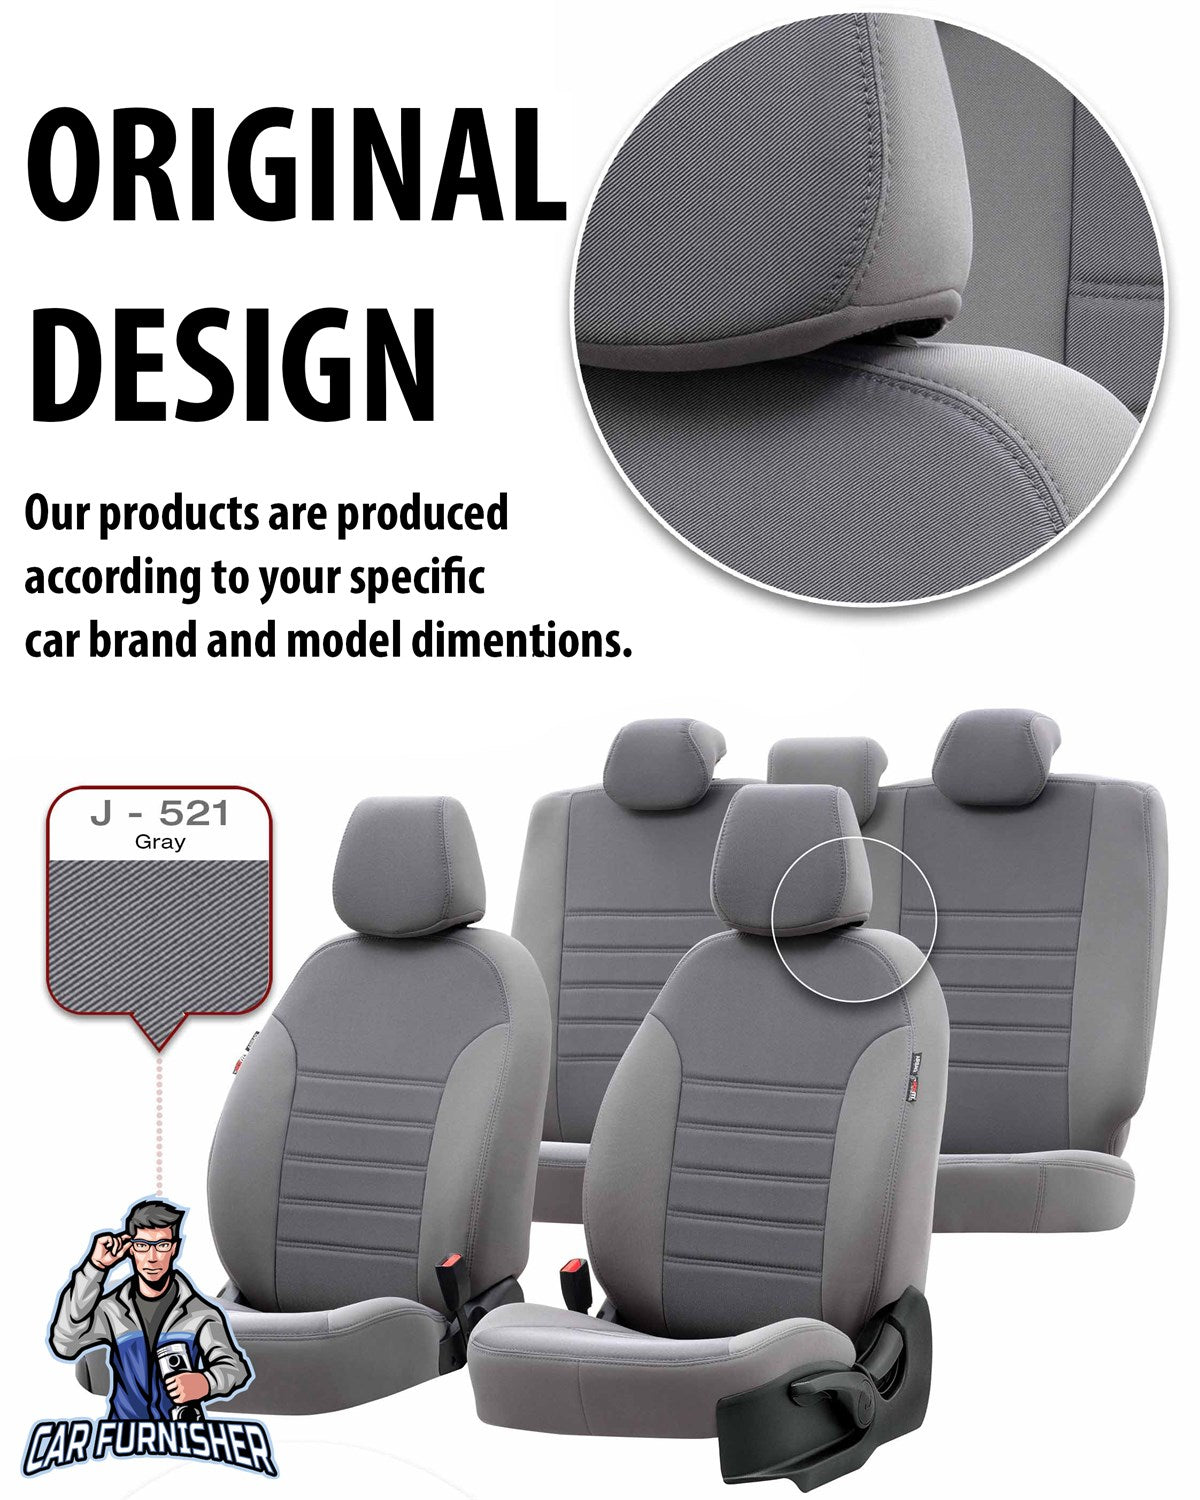 Audi Q5 Seat Cover Original Jacquard Design Beige Jacquard Fabric